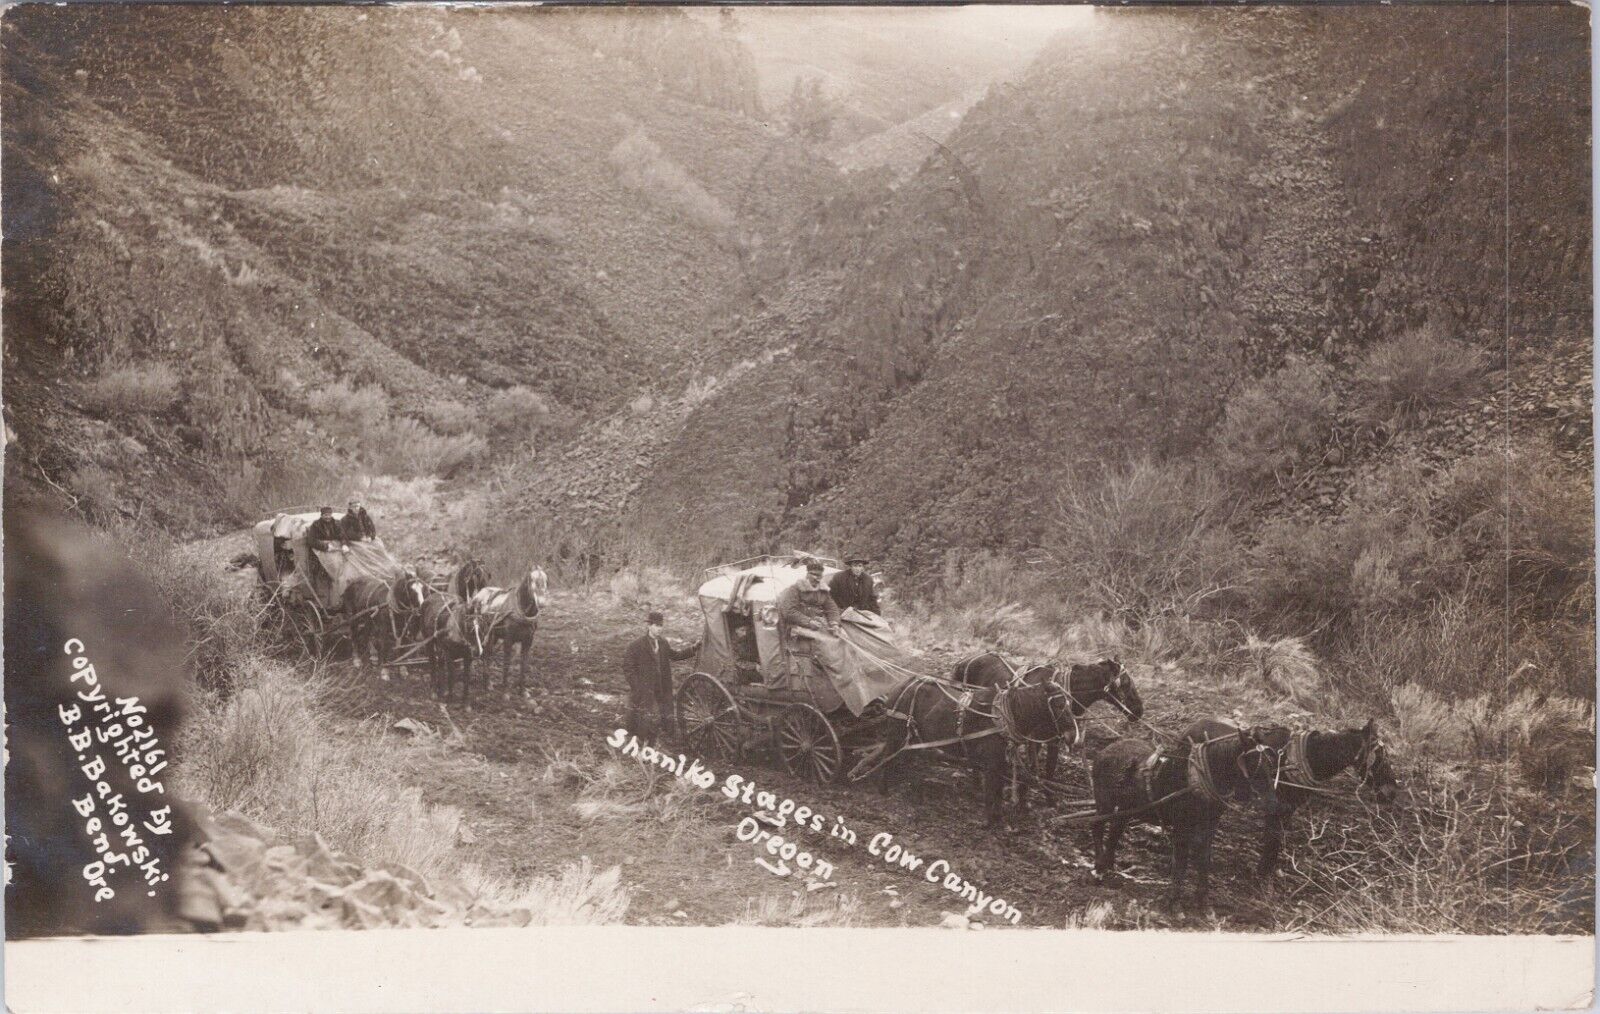 RPPC, B. B. BAKOWSKI, 1910, SHANIKO STAGES IN COW CANYON, OREGON